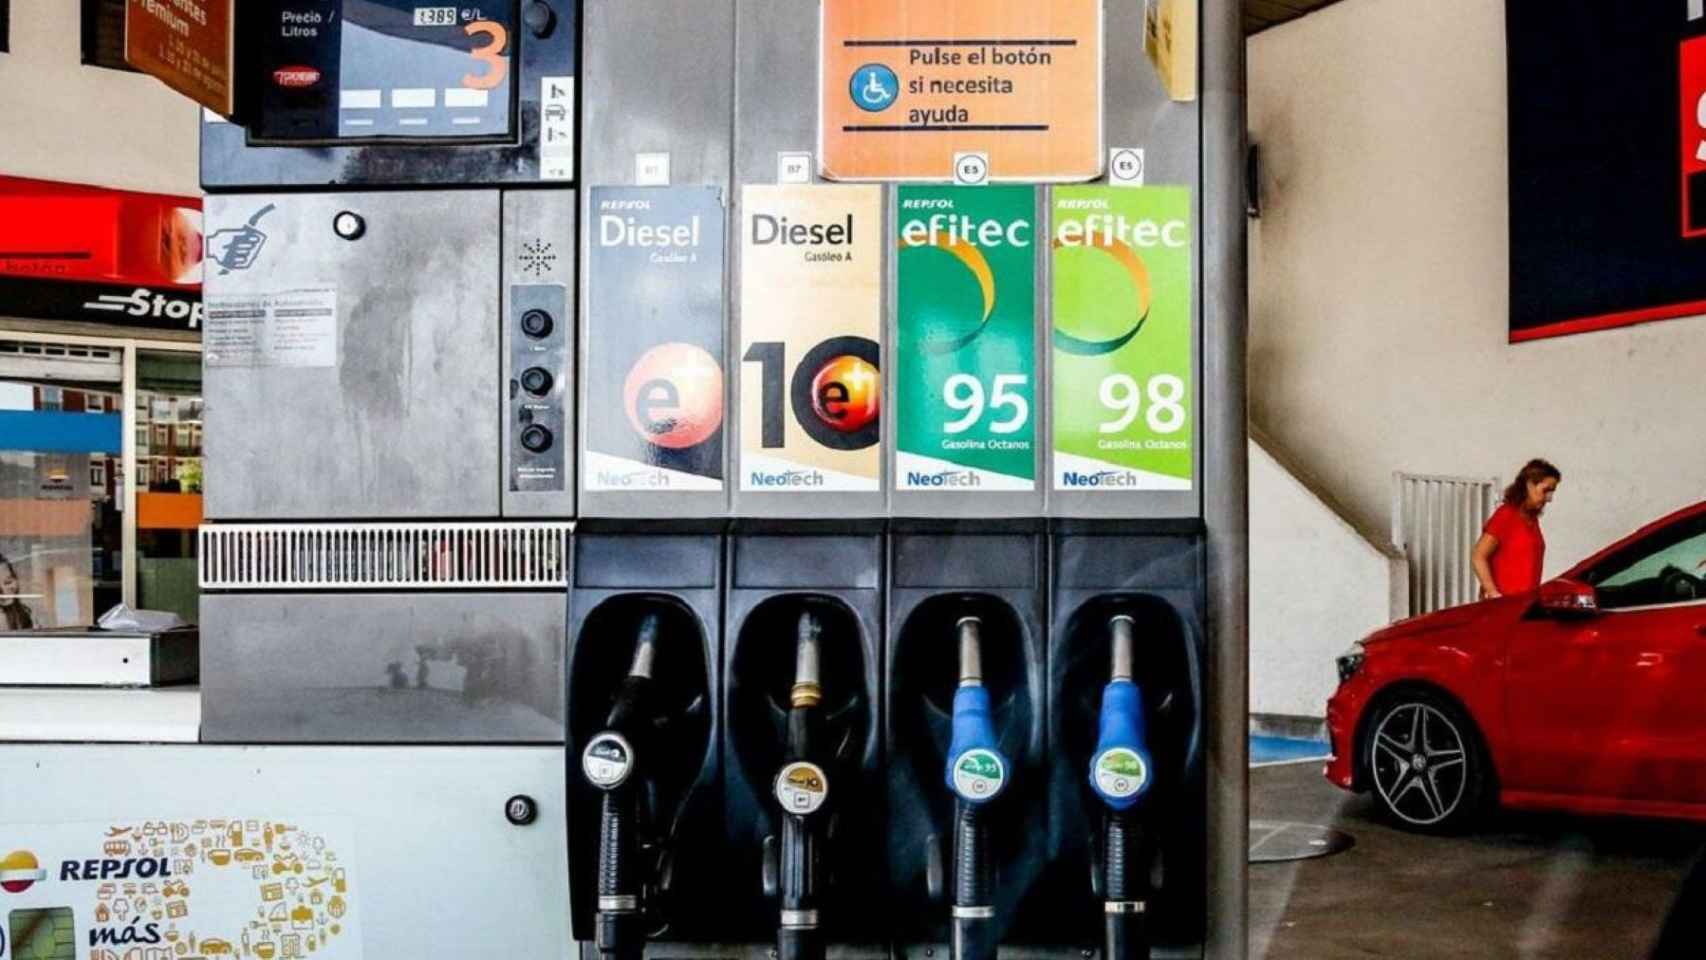 Imagen de un surtidor de gasolina en una imagen de archivo / EUROPA PRESS